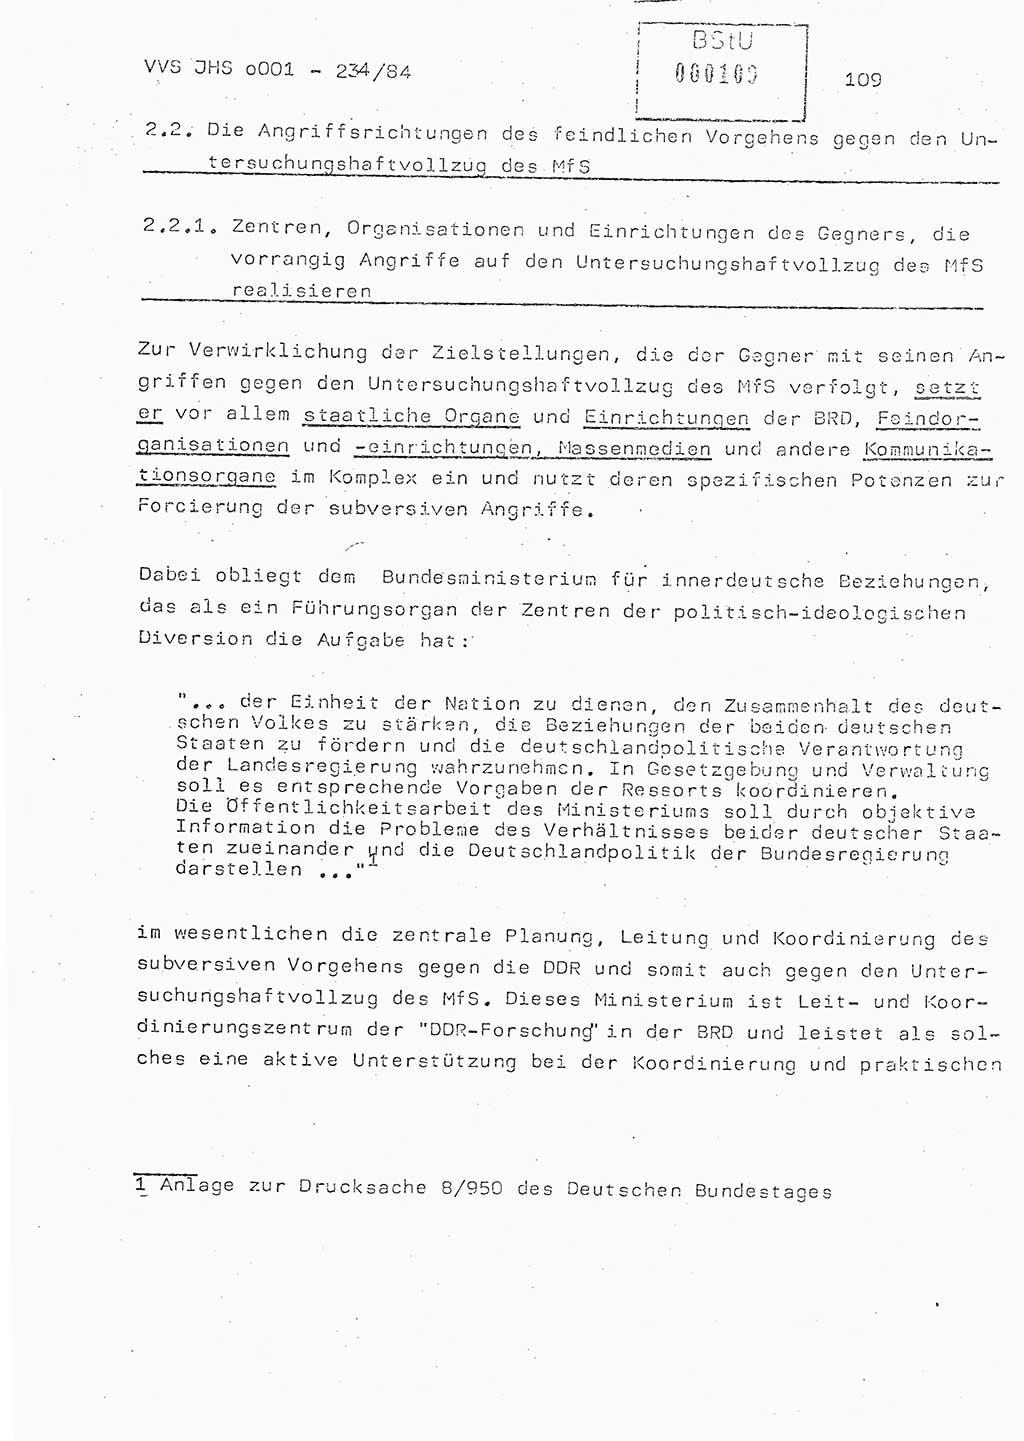 Dissertation Oberst Siegfried Rataizick (Abt. ⅩⅣ), Oberstleutnant Volkmar Heinz (Abt. ⅩⅣ), Oberstleutnant Werner Stein (HA Ⅸ), Hauptmann Heinz Conrad (JHS), Ministerium für Staatssicherheit (MfS) [Deutsche Demokratische Republik (DDR)], Juristische Hochschule (JHS), Vertrauliche Verschlußsache (VVS) o001-234/84, Potsdam 1984, Seite 109 (Diss. MfS DDR JHS VVS o001-234/84 1984, S. 109)